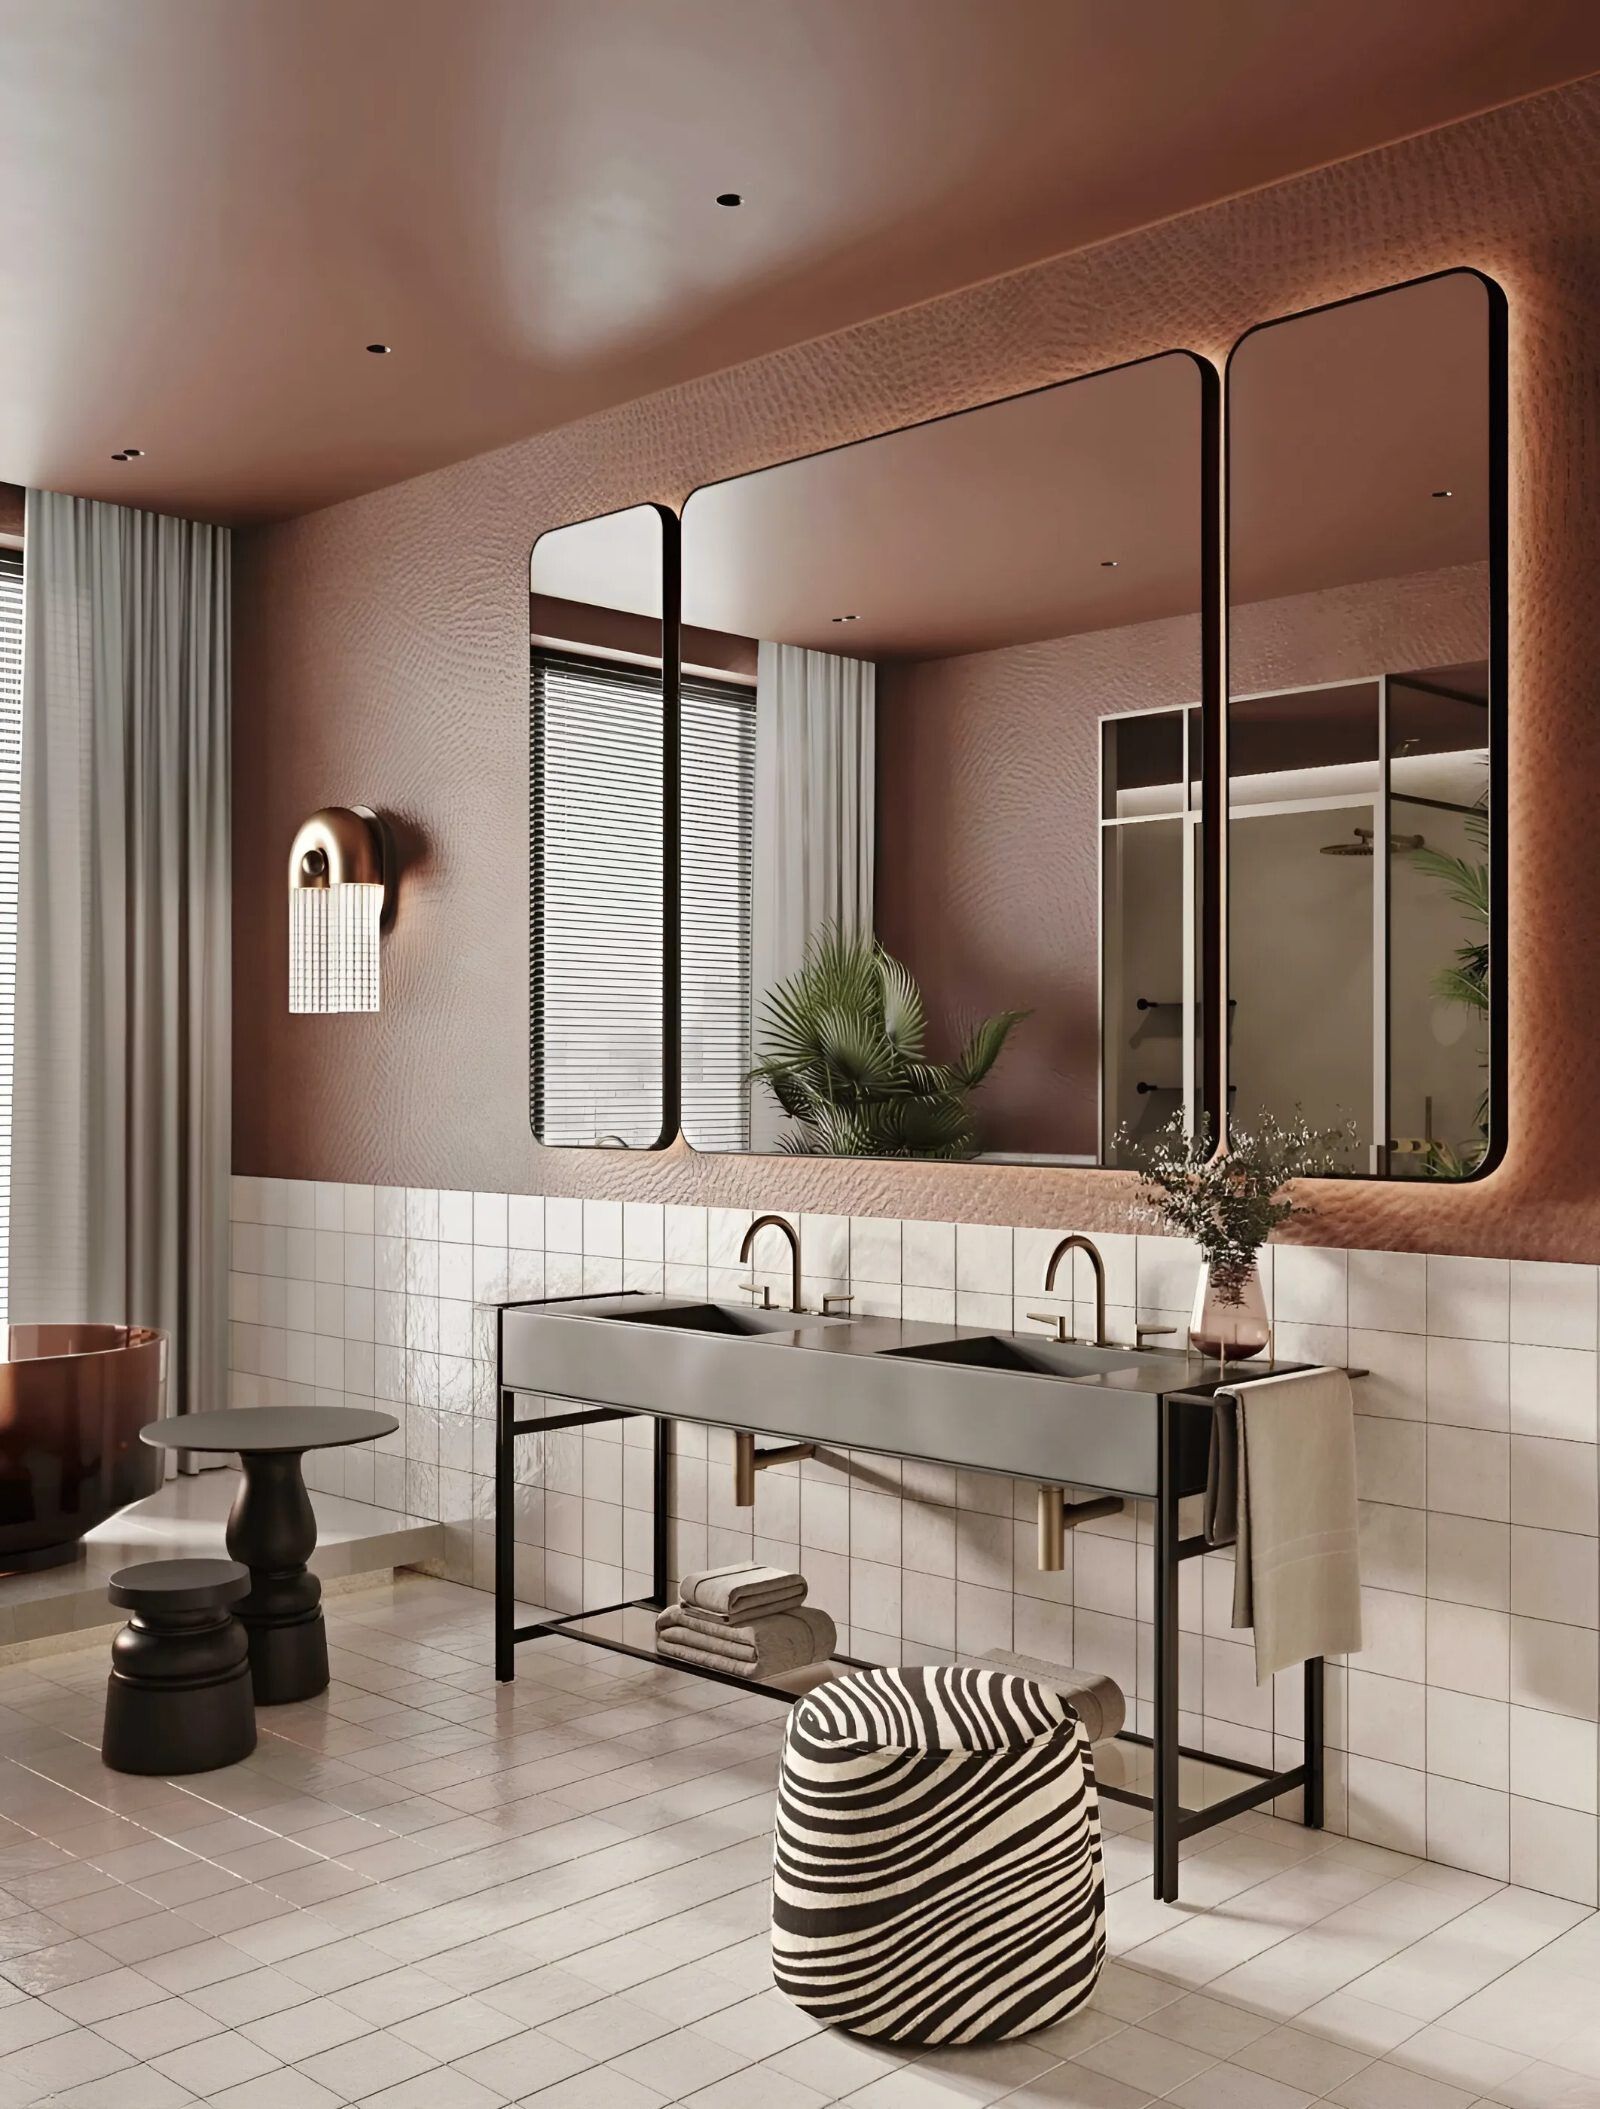 Phòng tắm Luxury nổi bật với các bố trí nội thất tinh gọn, thanh thoát